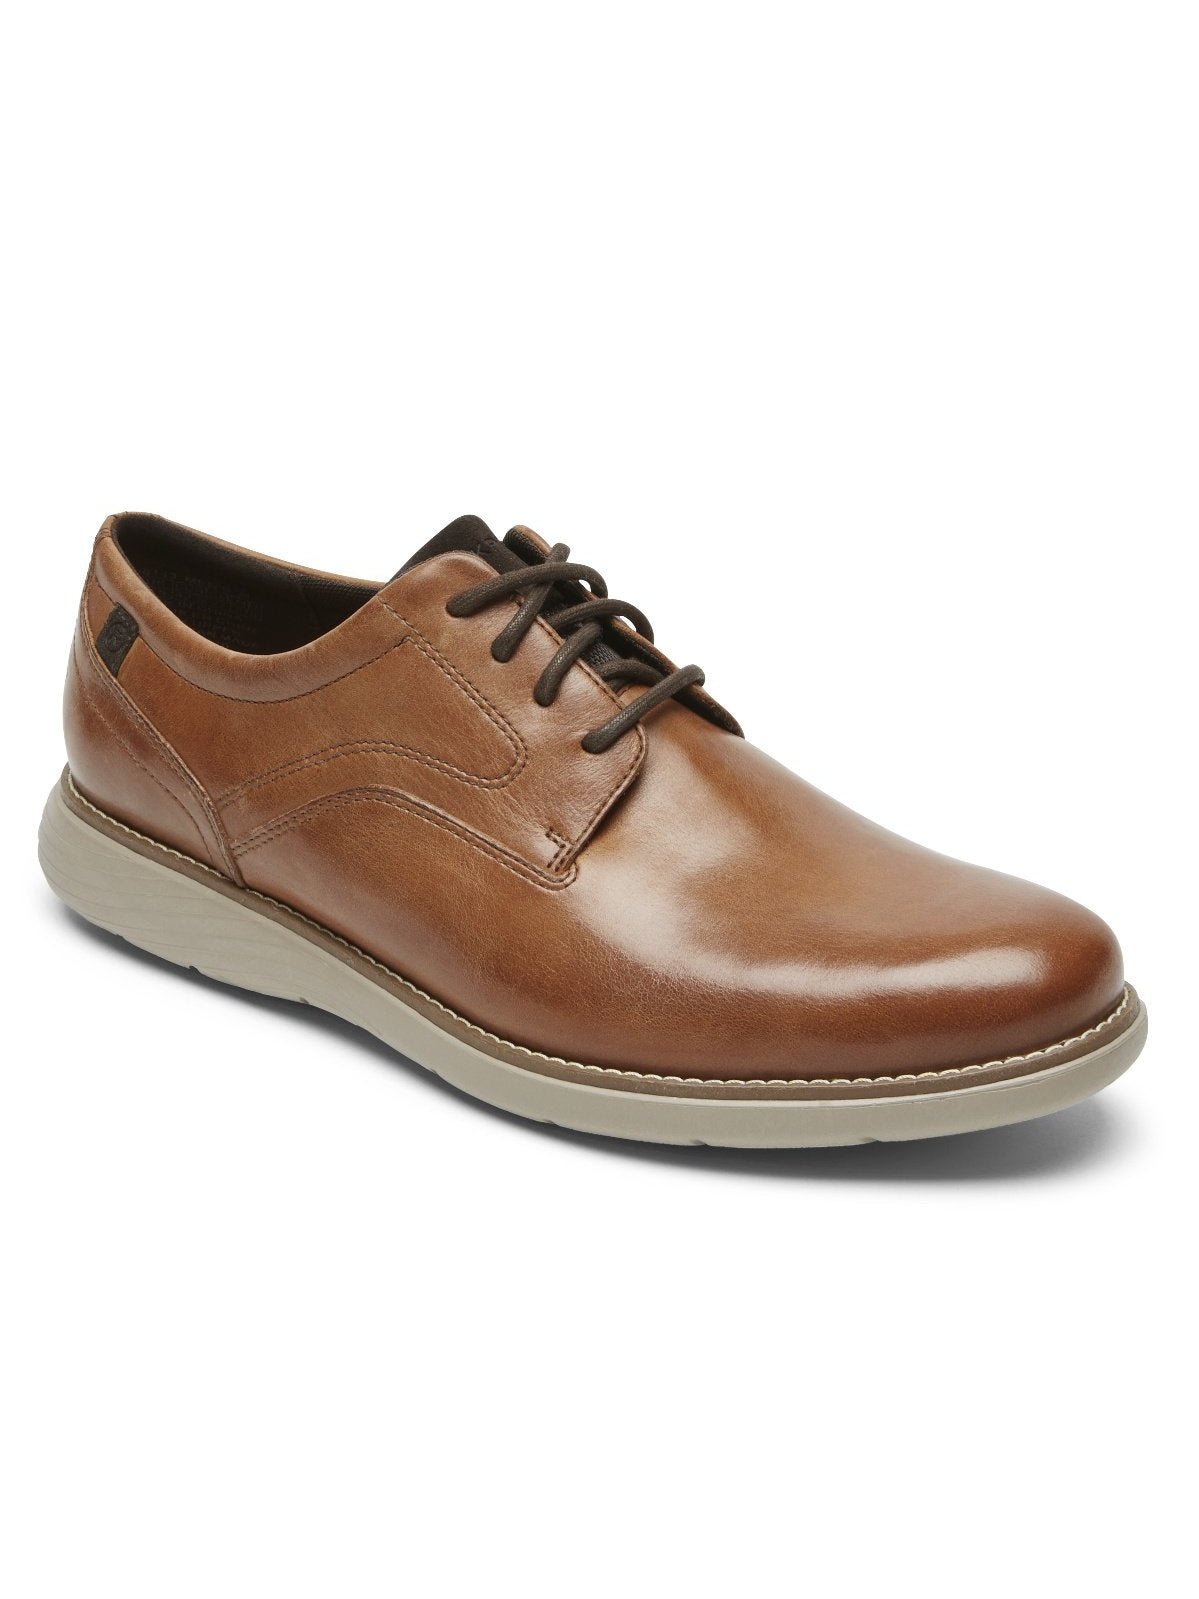 Rockport Men's Garett Plain Toe Oxford Shoes Caramel CI6143